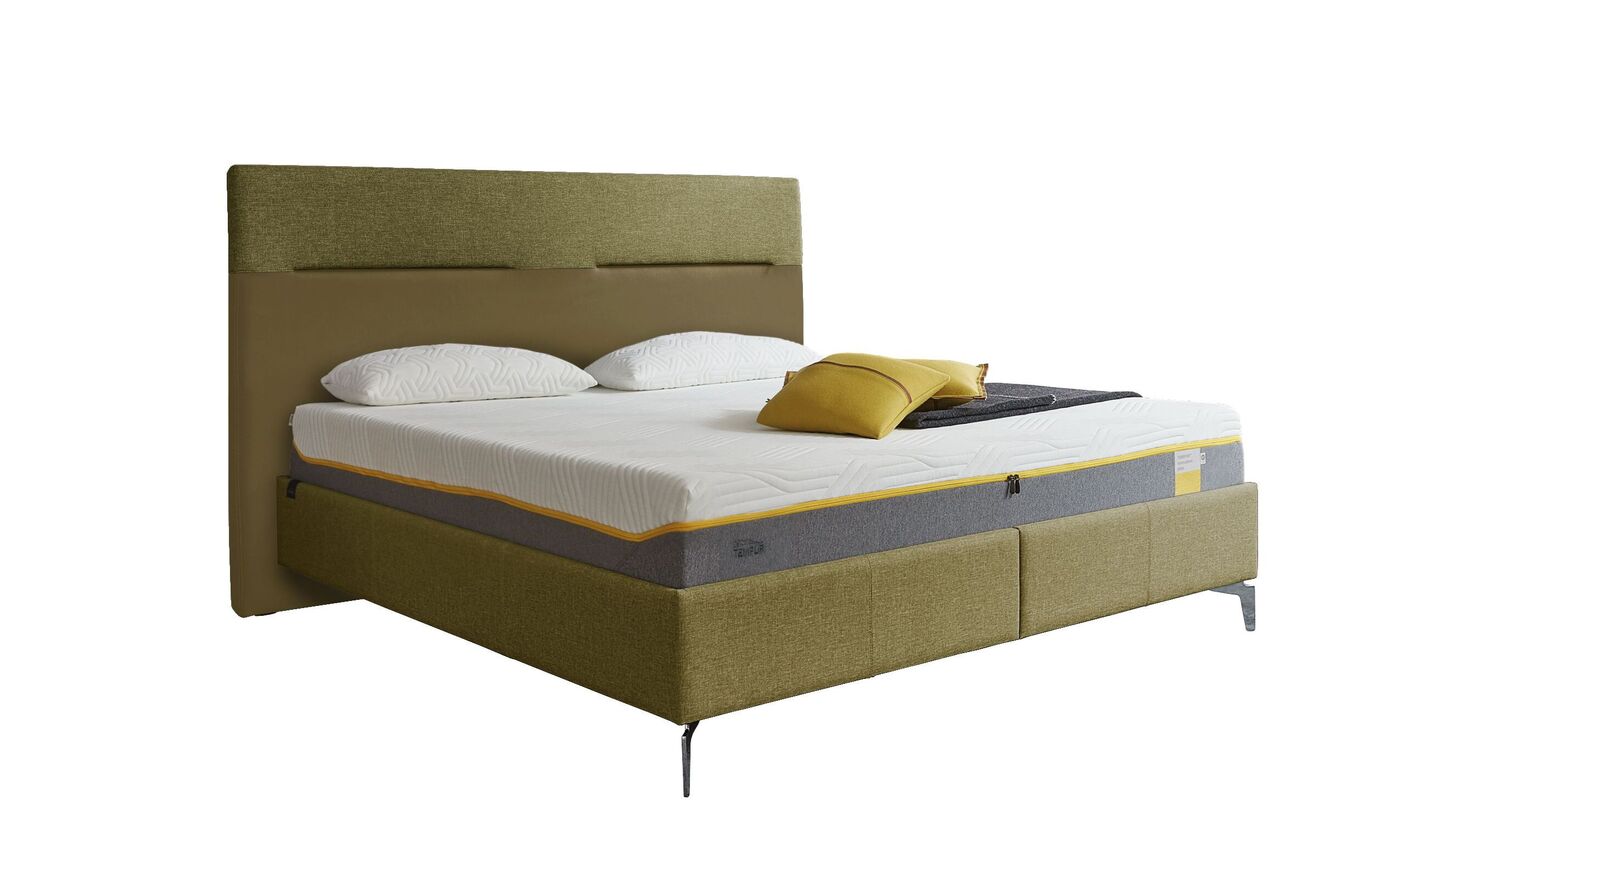 TEMPUR Bett Relax Texture mit Bezug in Webstoff und Kunstleder in Grün